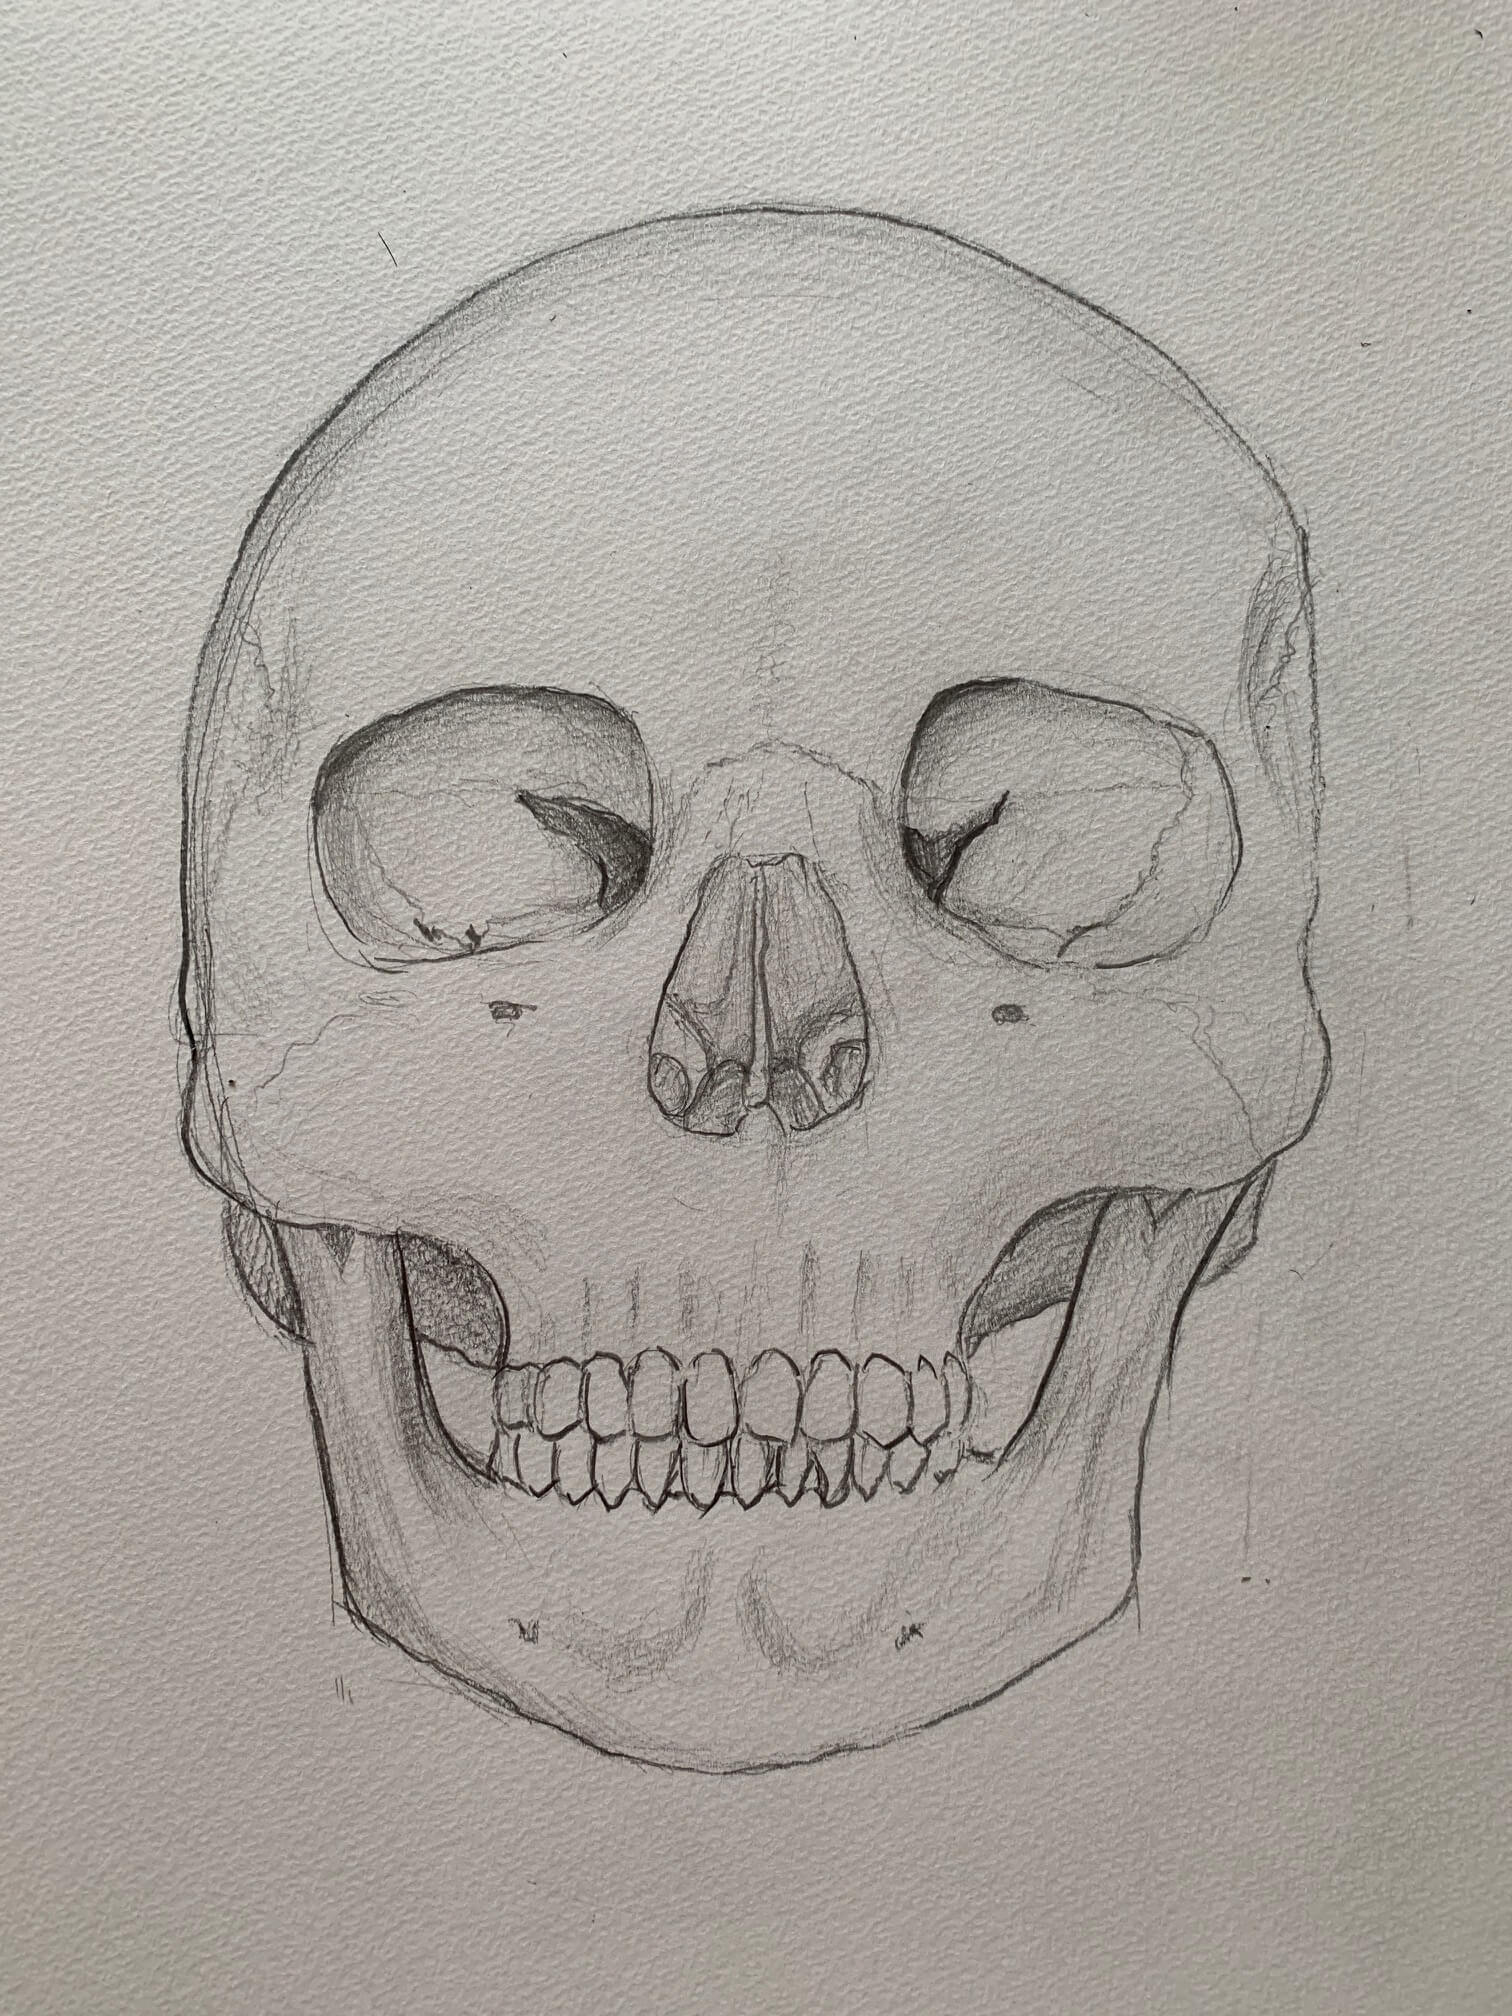 頭蓋のイラスト「頭部の骨格で、合計 23個の骨から構成されています」